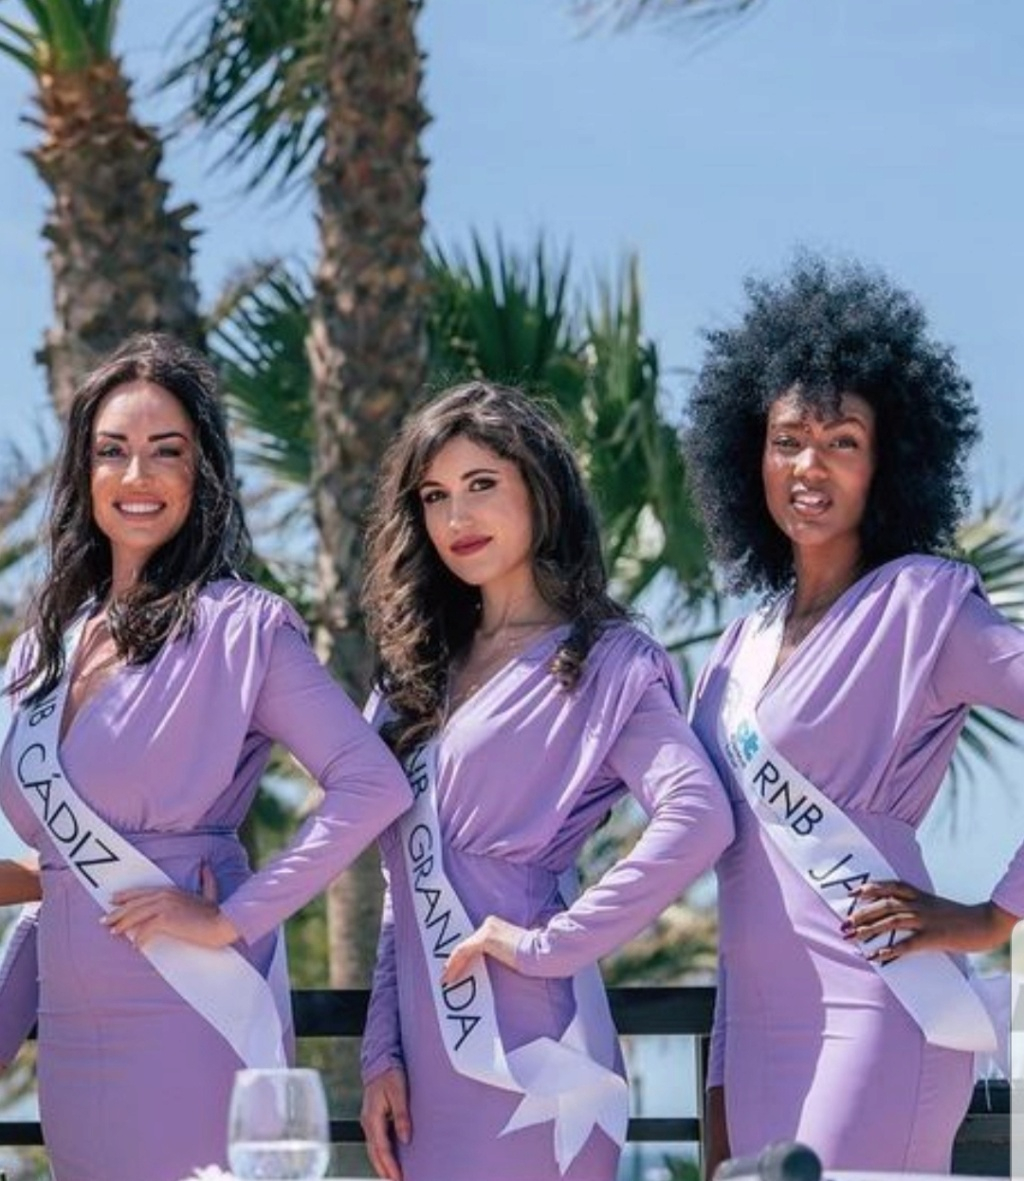 Team Málaga nuevos dueños de la franquicia "Miss Supranational" - Página 6 20230423